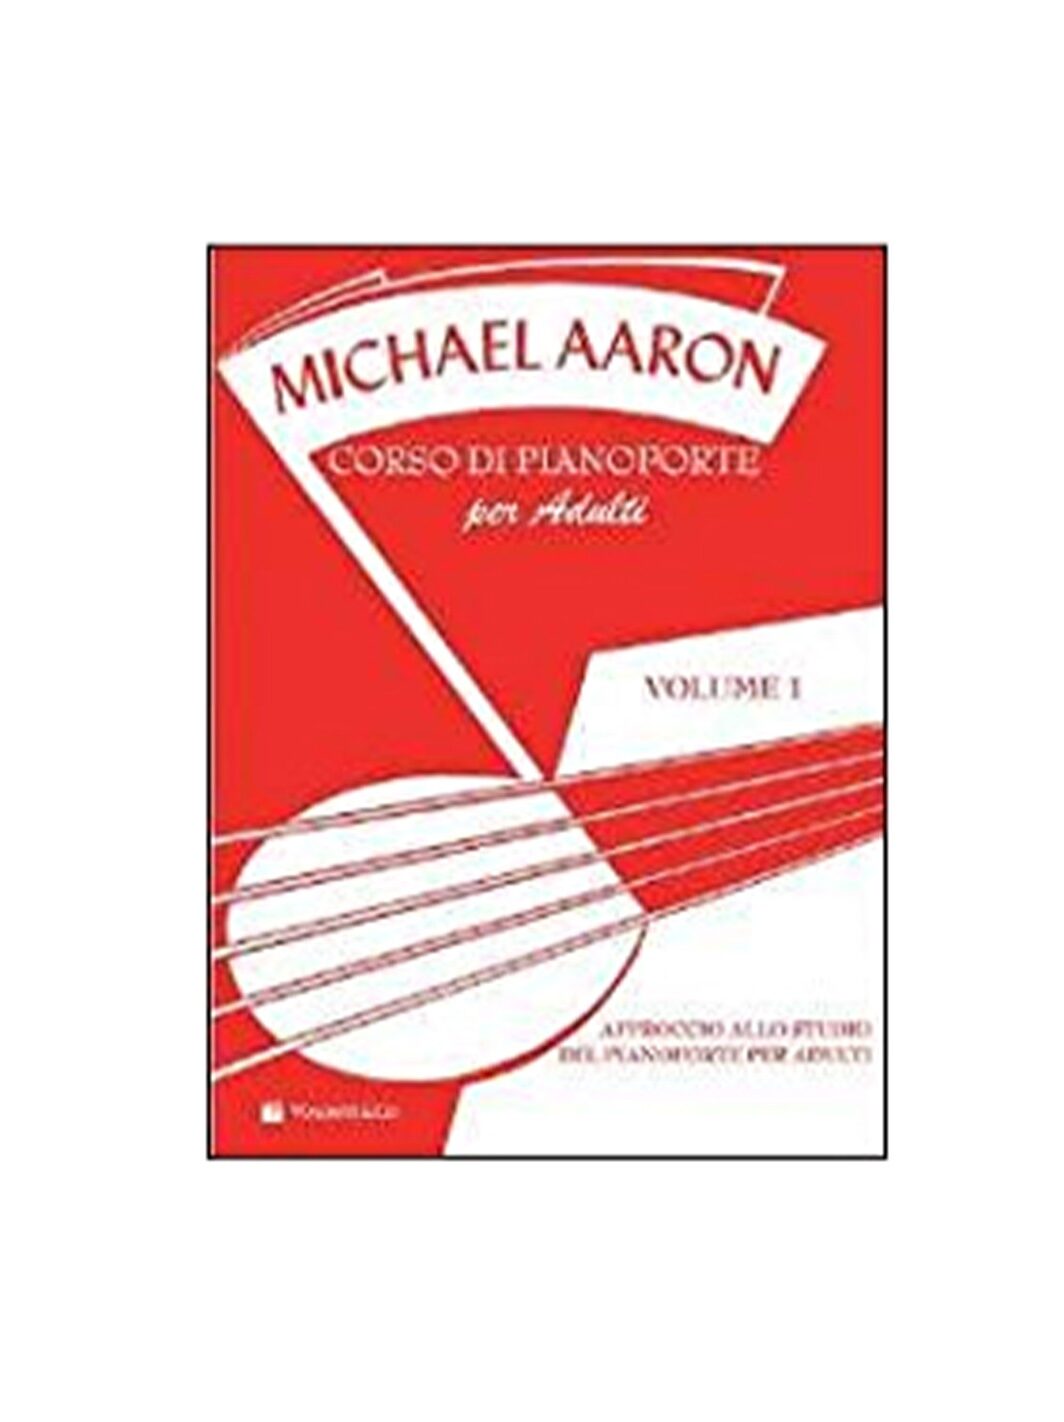 Michael Aaron corso di pianoforte per adulti vol.1